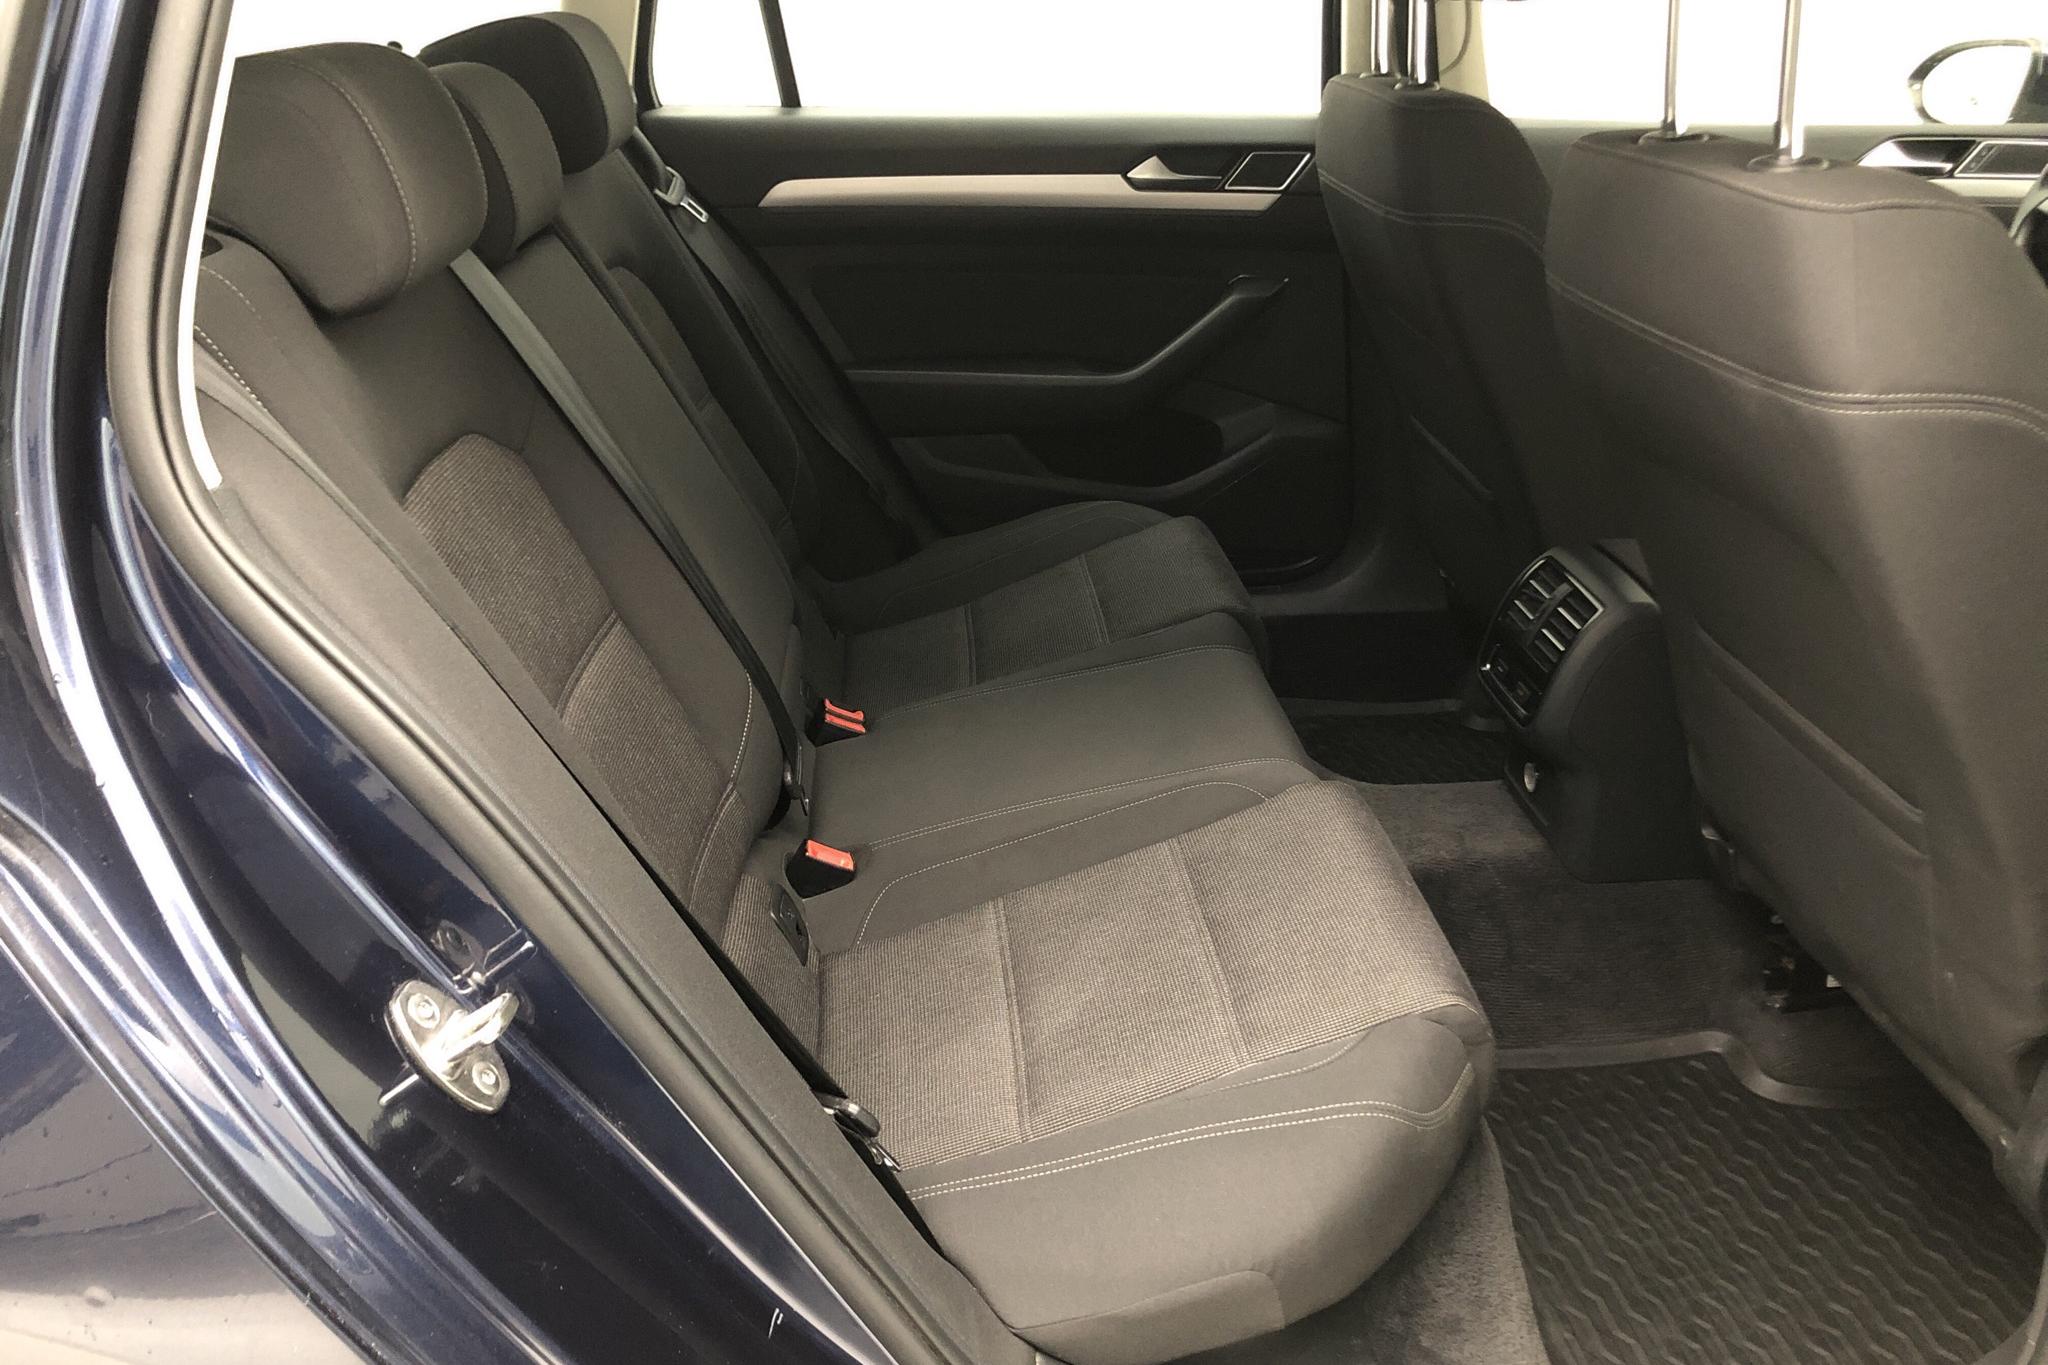 VW Passat 2.0 TDI Sportscombi (150hk) - 140 920 km - Manual - Dark Blue - 2015